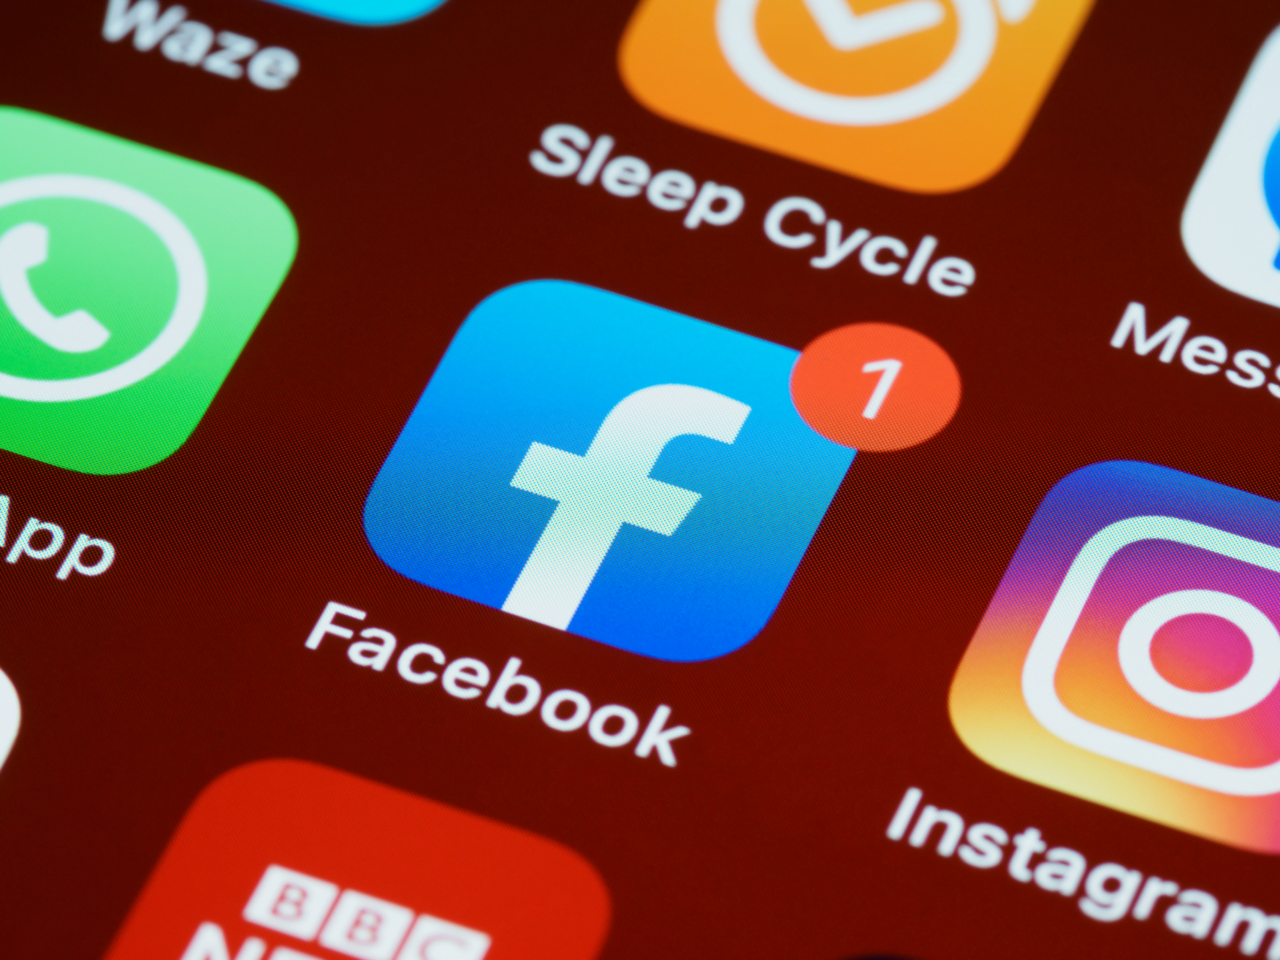 Ikona aplikacji Facebook z powiadomieniem na ekranie smartfona, otoczona innymi ikonami aplikacji. Polacy nie chcą płacić za ich subskrypcje.